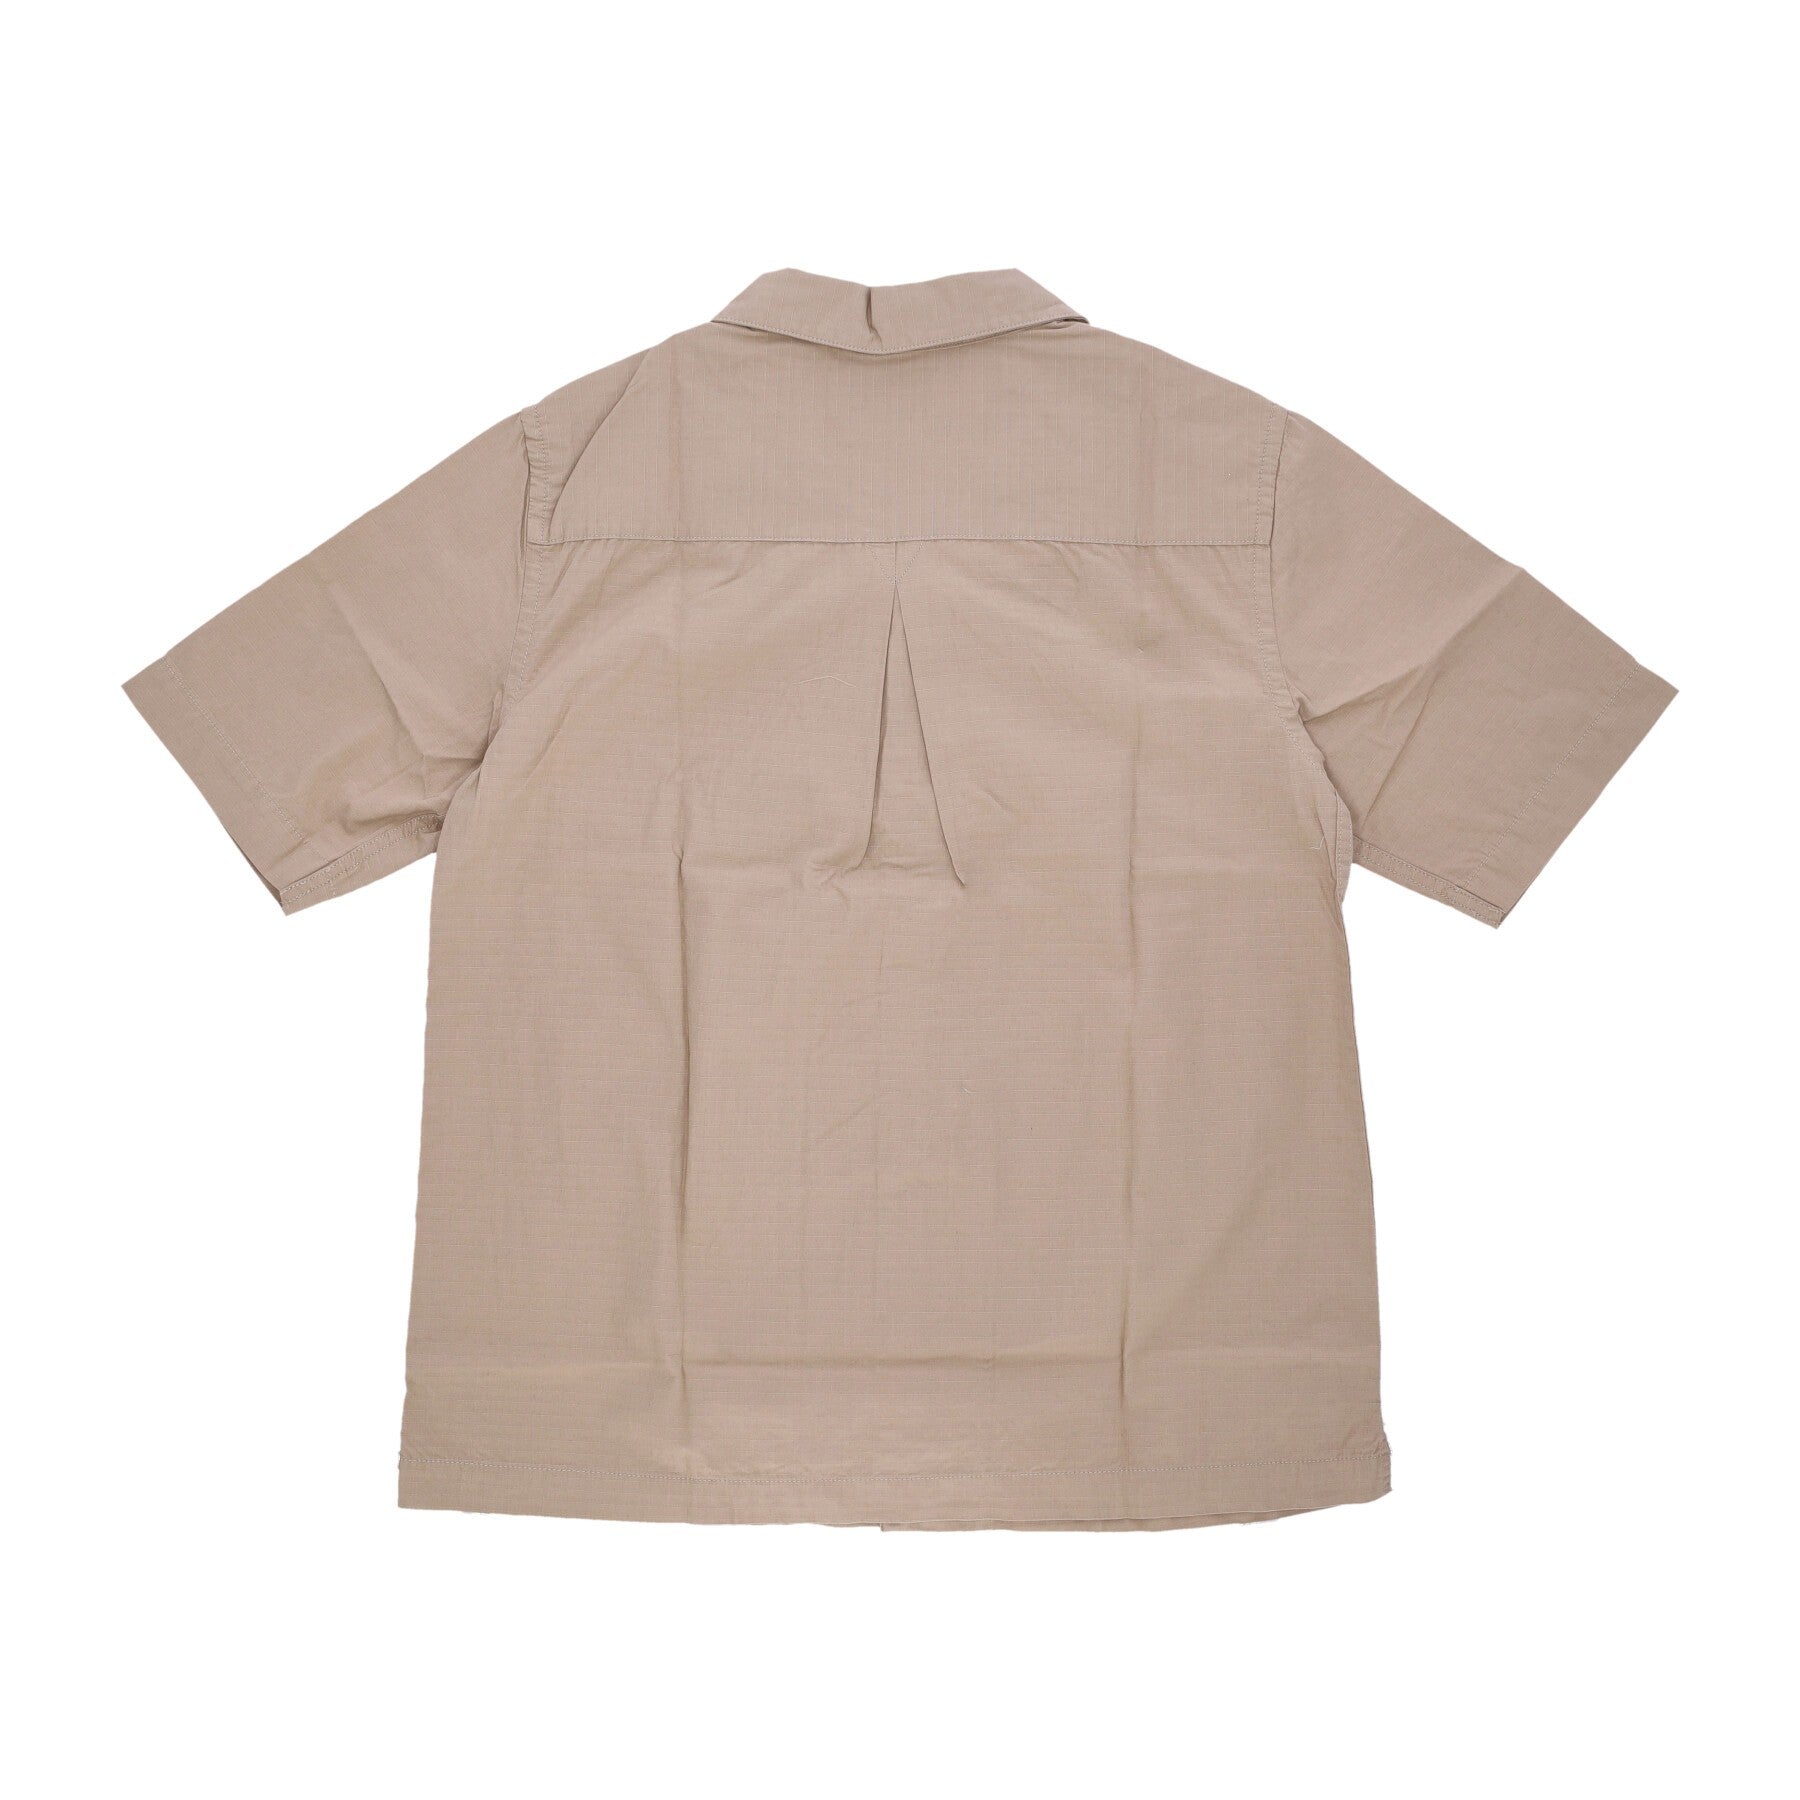 Wf Roc Shop Shirt Men's Short Sleeve Shirt